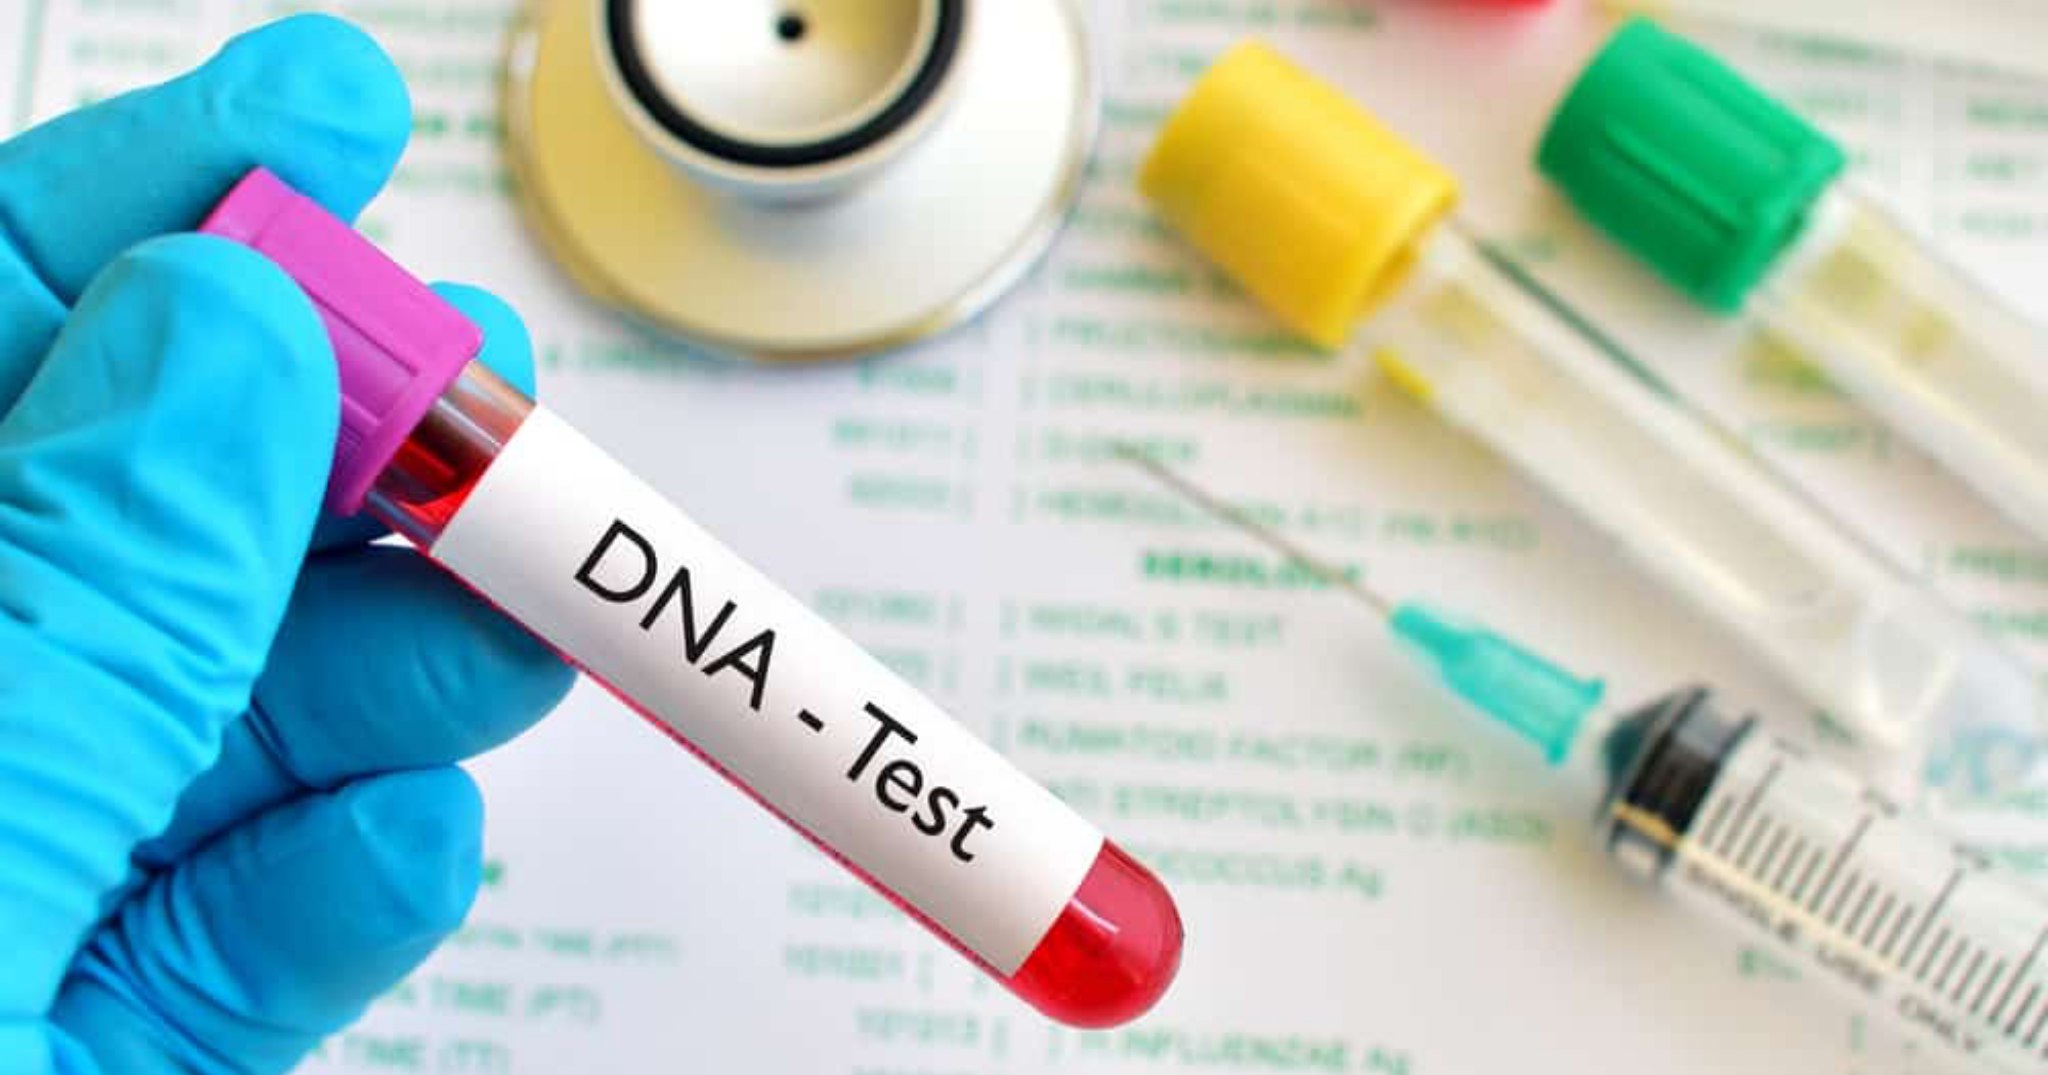 Một công ty xét nghiệm ADN ở Canada bị cáo buộc sử dụng kết quả giả để gửi cho khách hàng